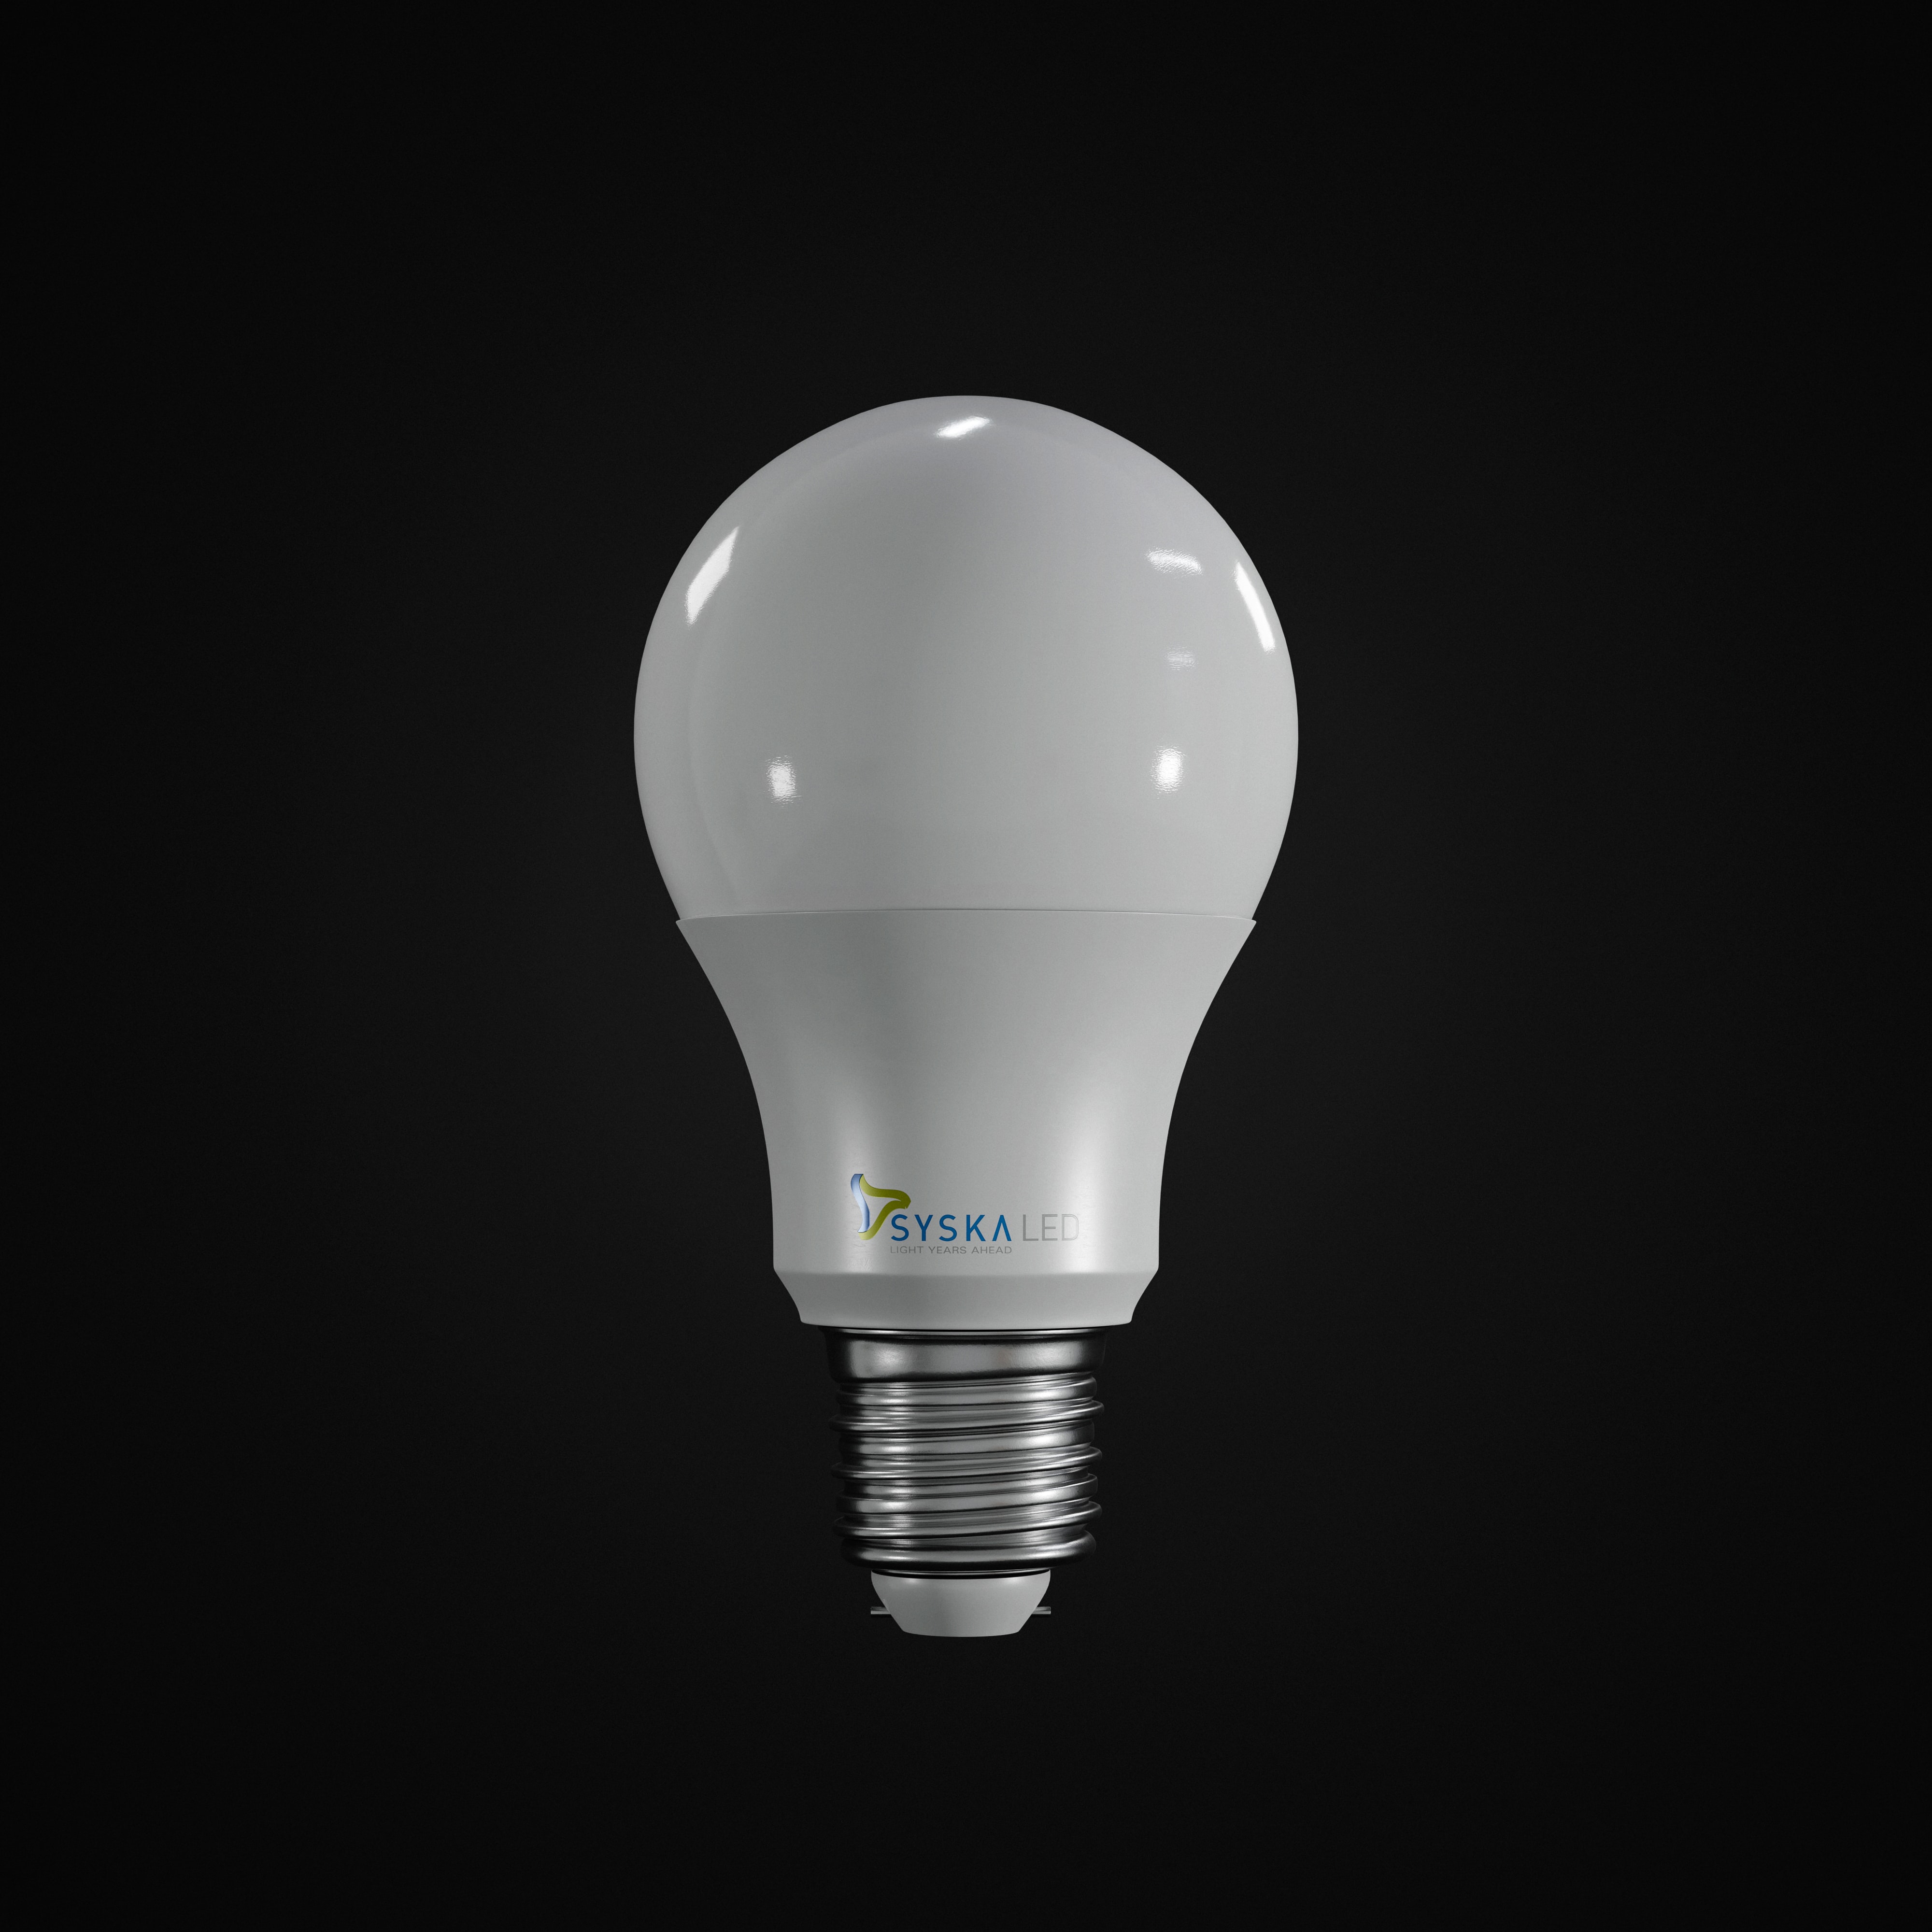 LED Bulbs vs. CFL Bulbs